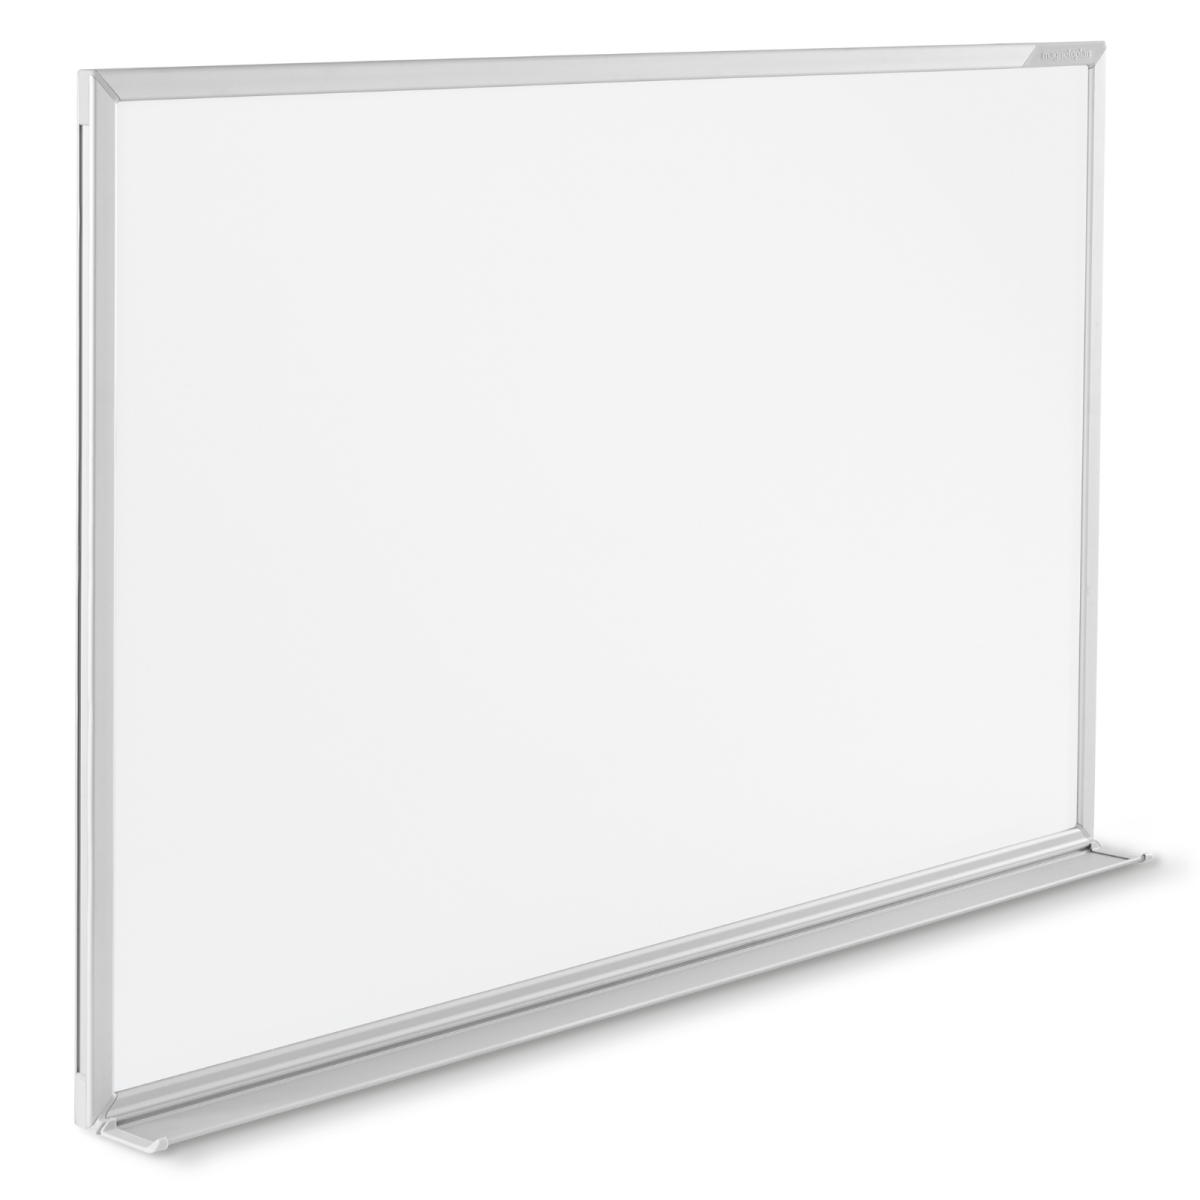 Metallrückwand inklusive Befestigungsmaterial magnetoplan Whiteboard CC 220 x 120 cm mit emaillierter Oberfläche in weiteren Größen auswählbar 